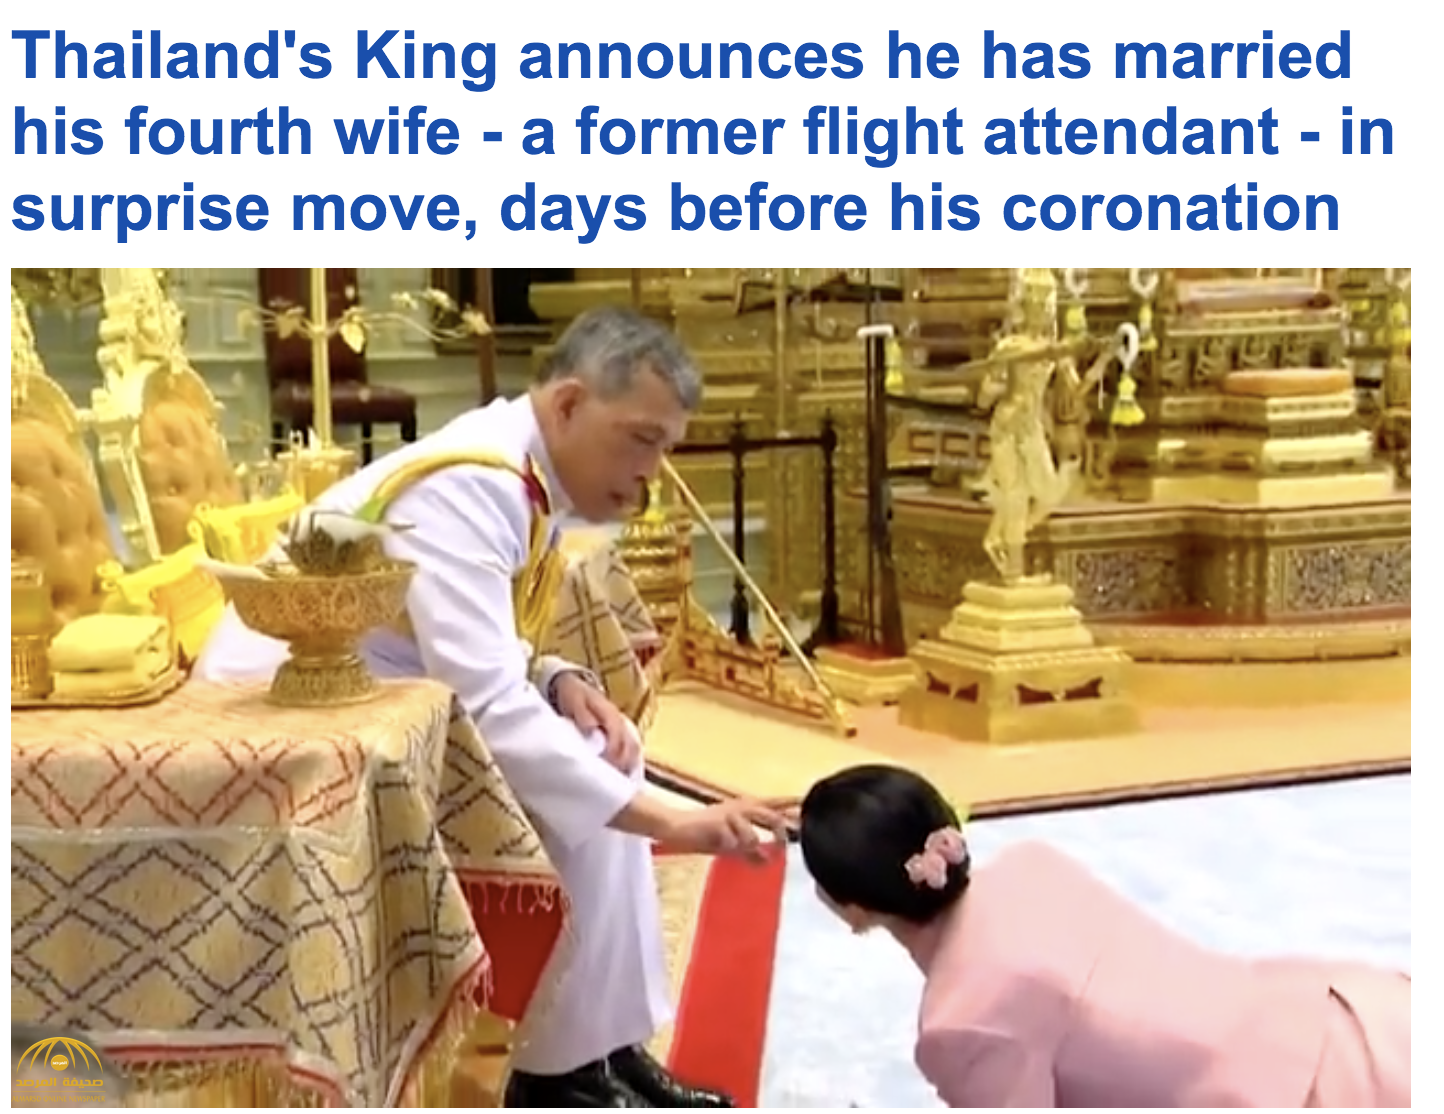 شاهد .. مراسم زواج ملك تايلاند على مضيفة طيران .. والأخيرة تزحف على الأرض وتستلم منه صندوق فاخر!